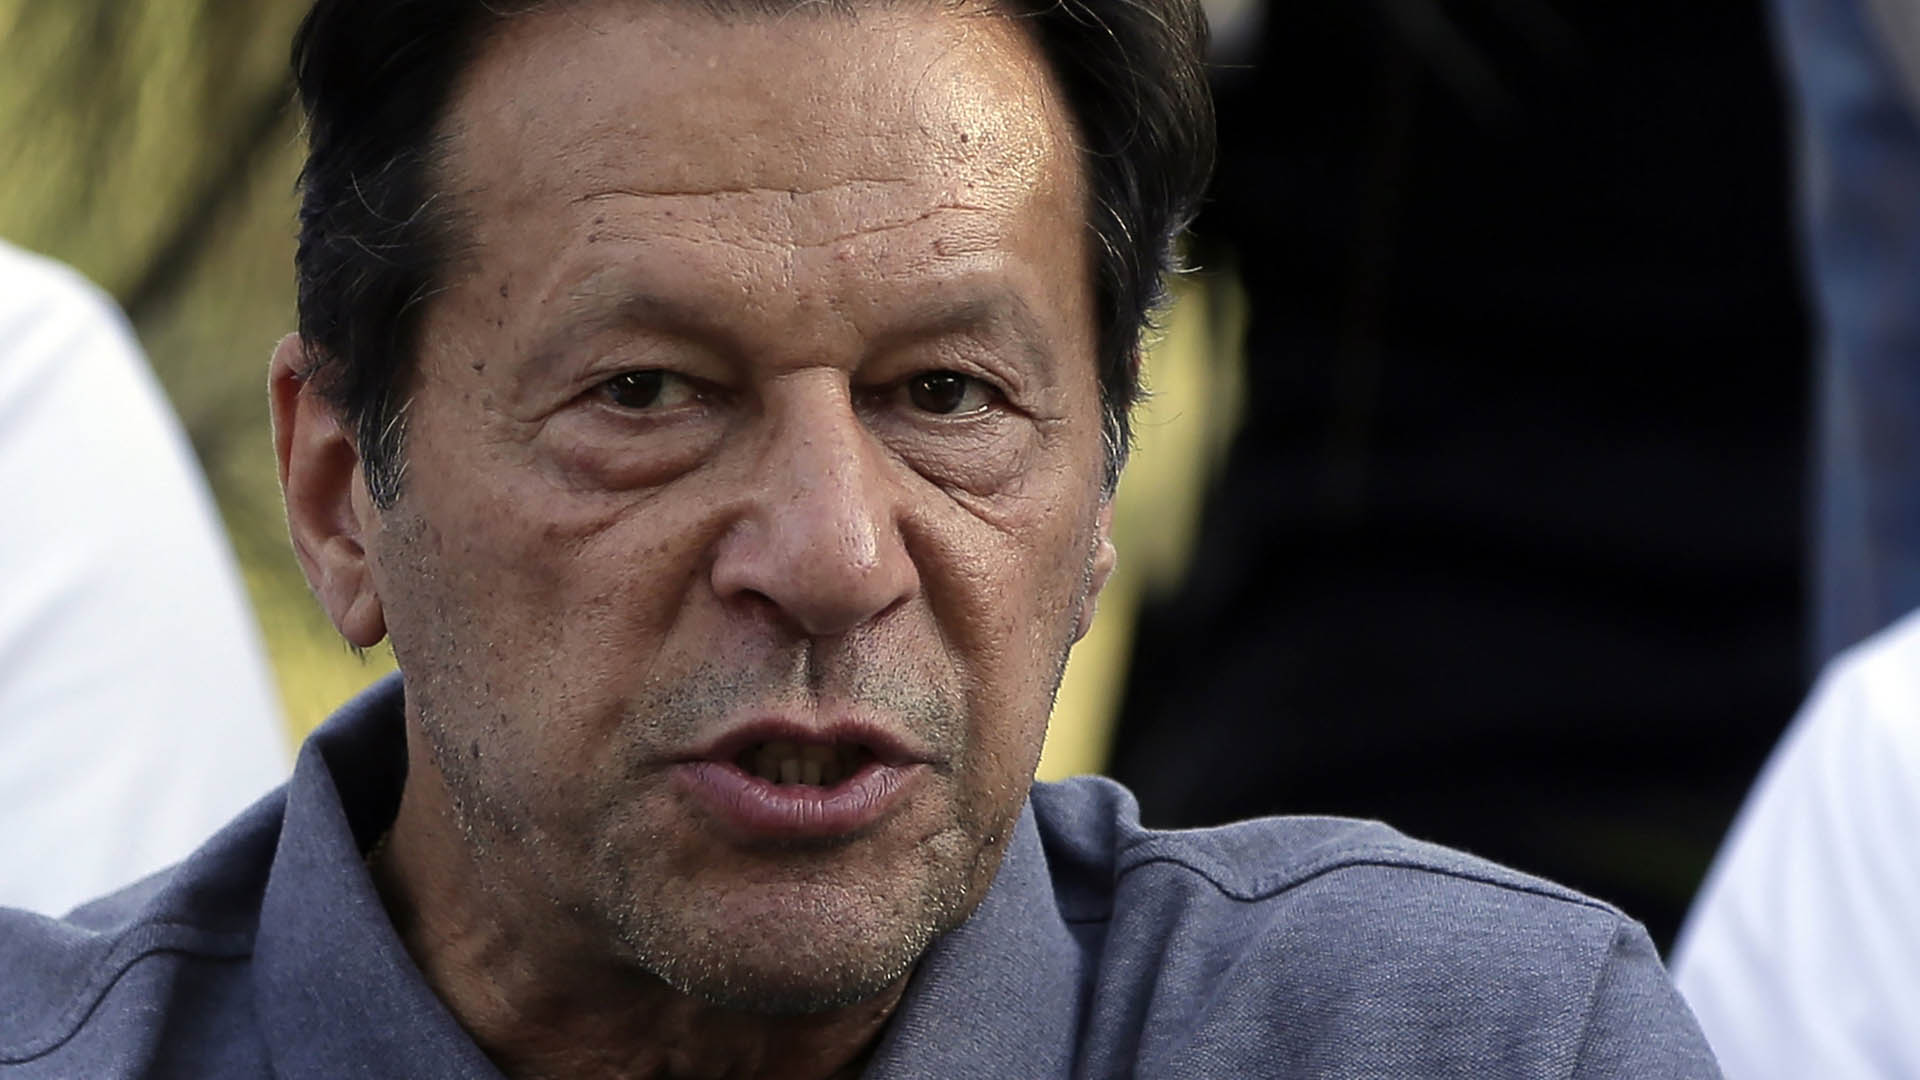 Früherer pakistanischer Premier Khan angeschossen